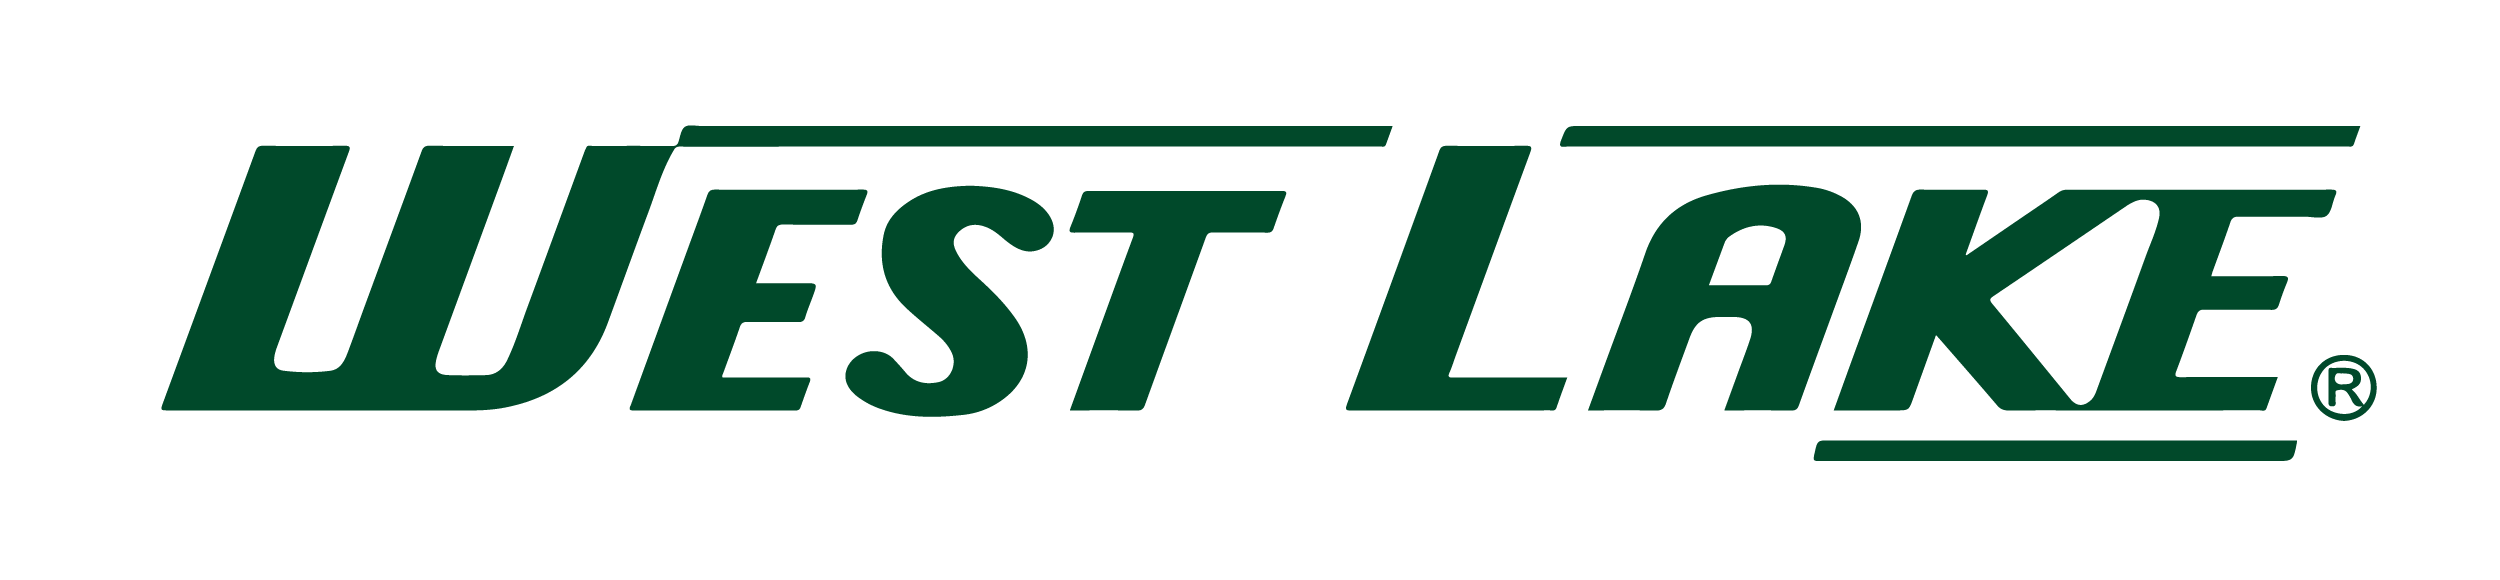 Westlake_logo-green.png